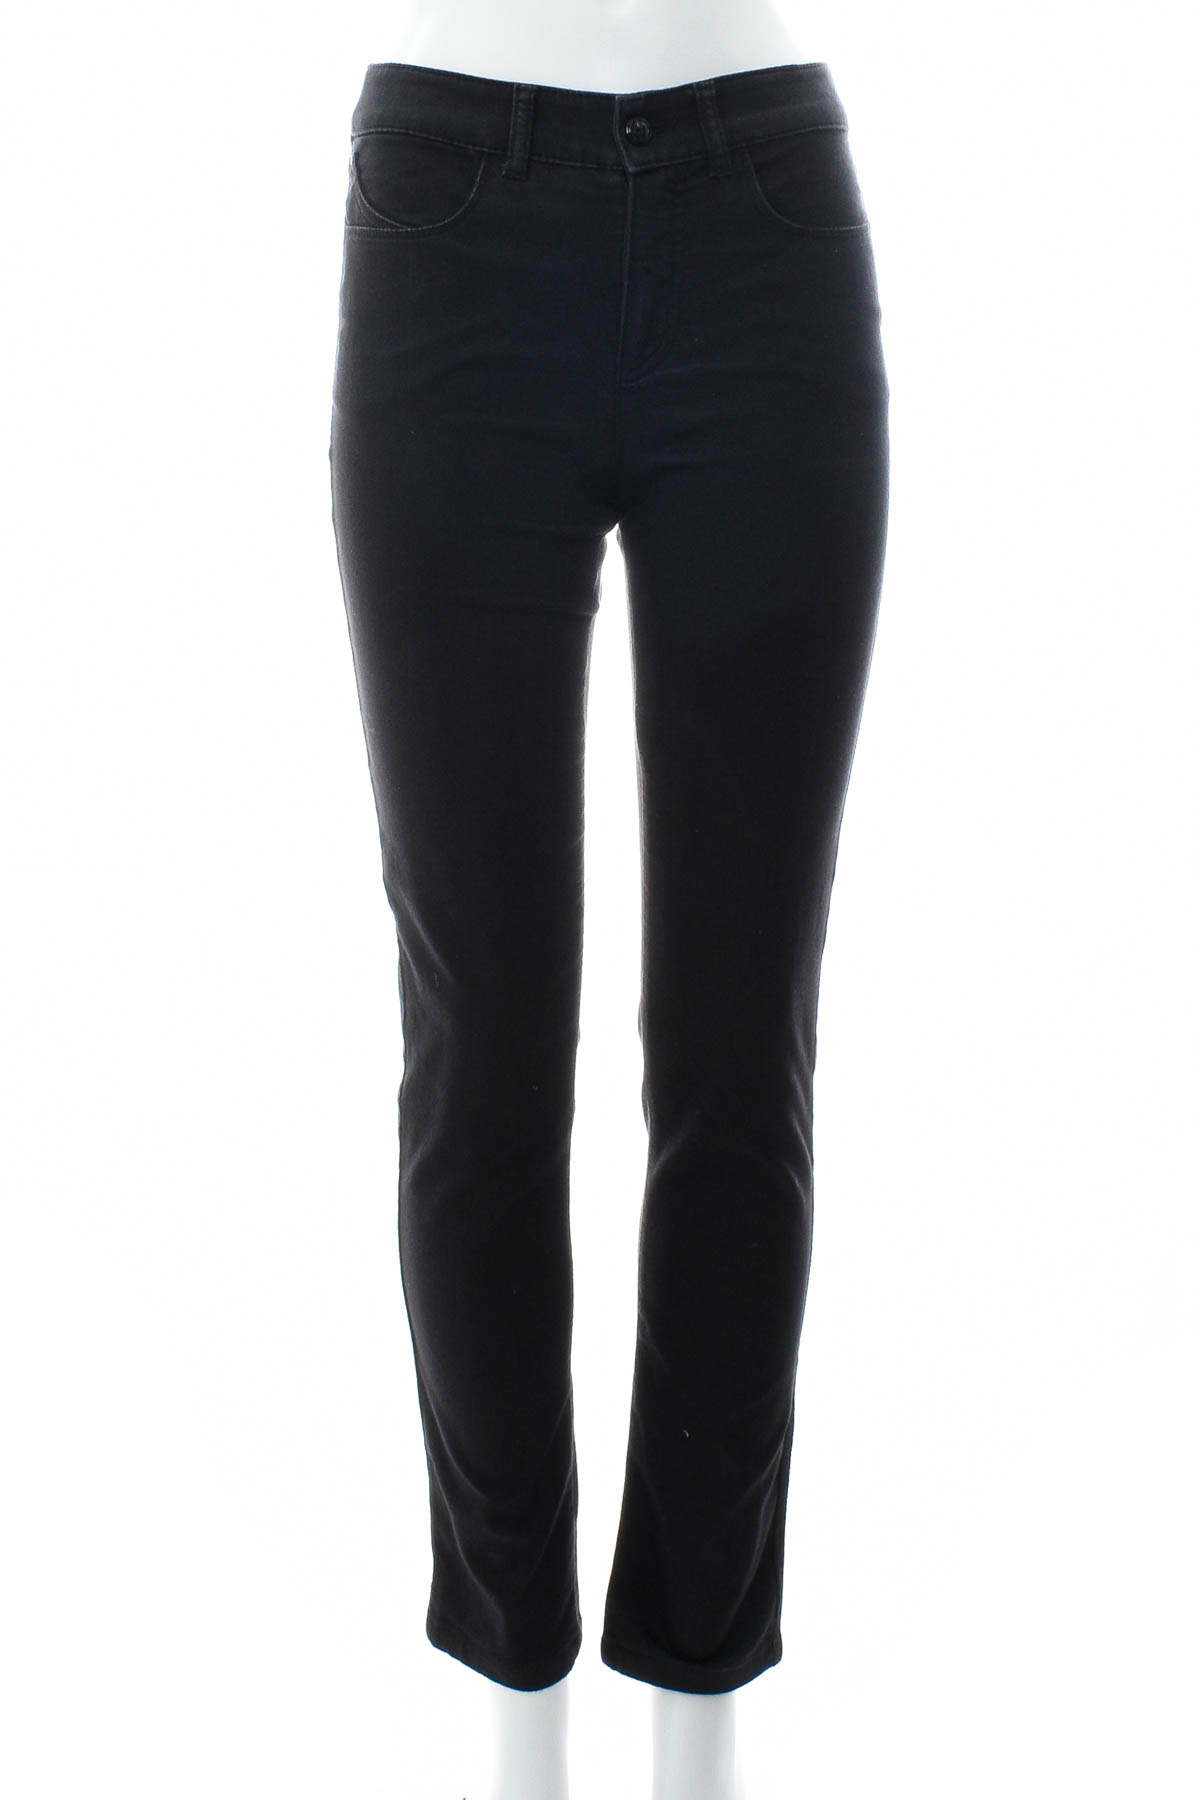 Spodnie damskie - Armani Jeans - 0